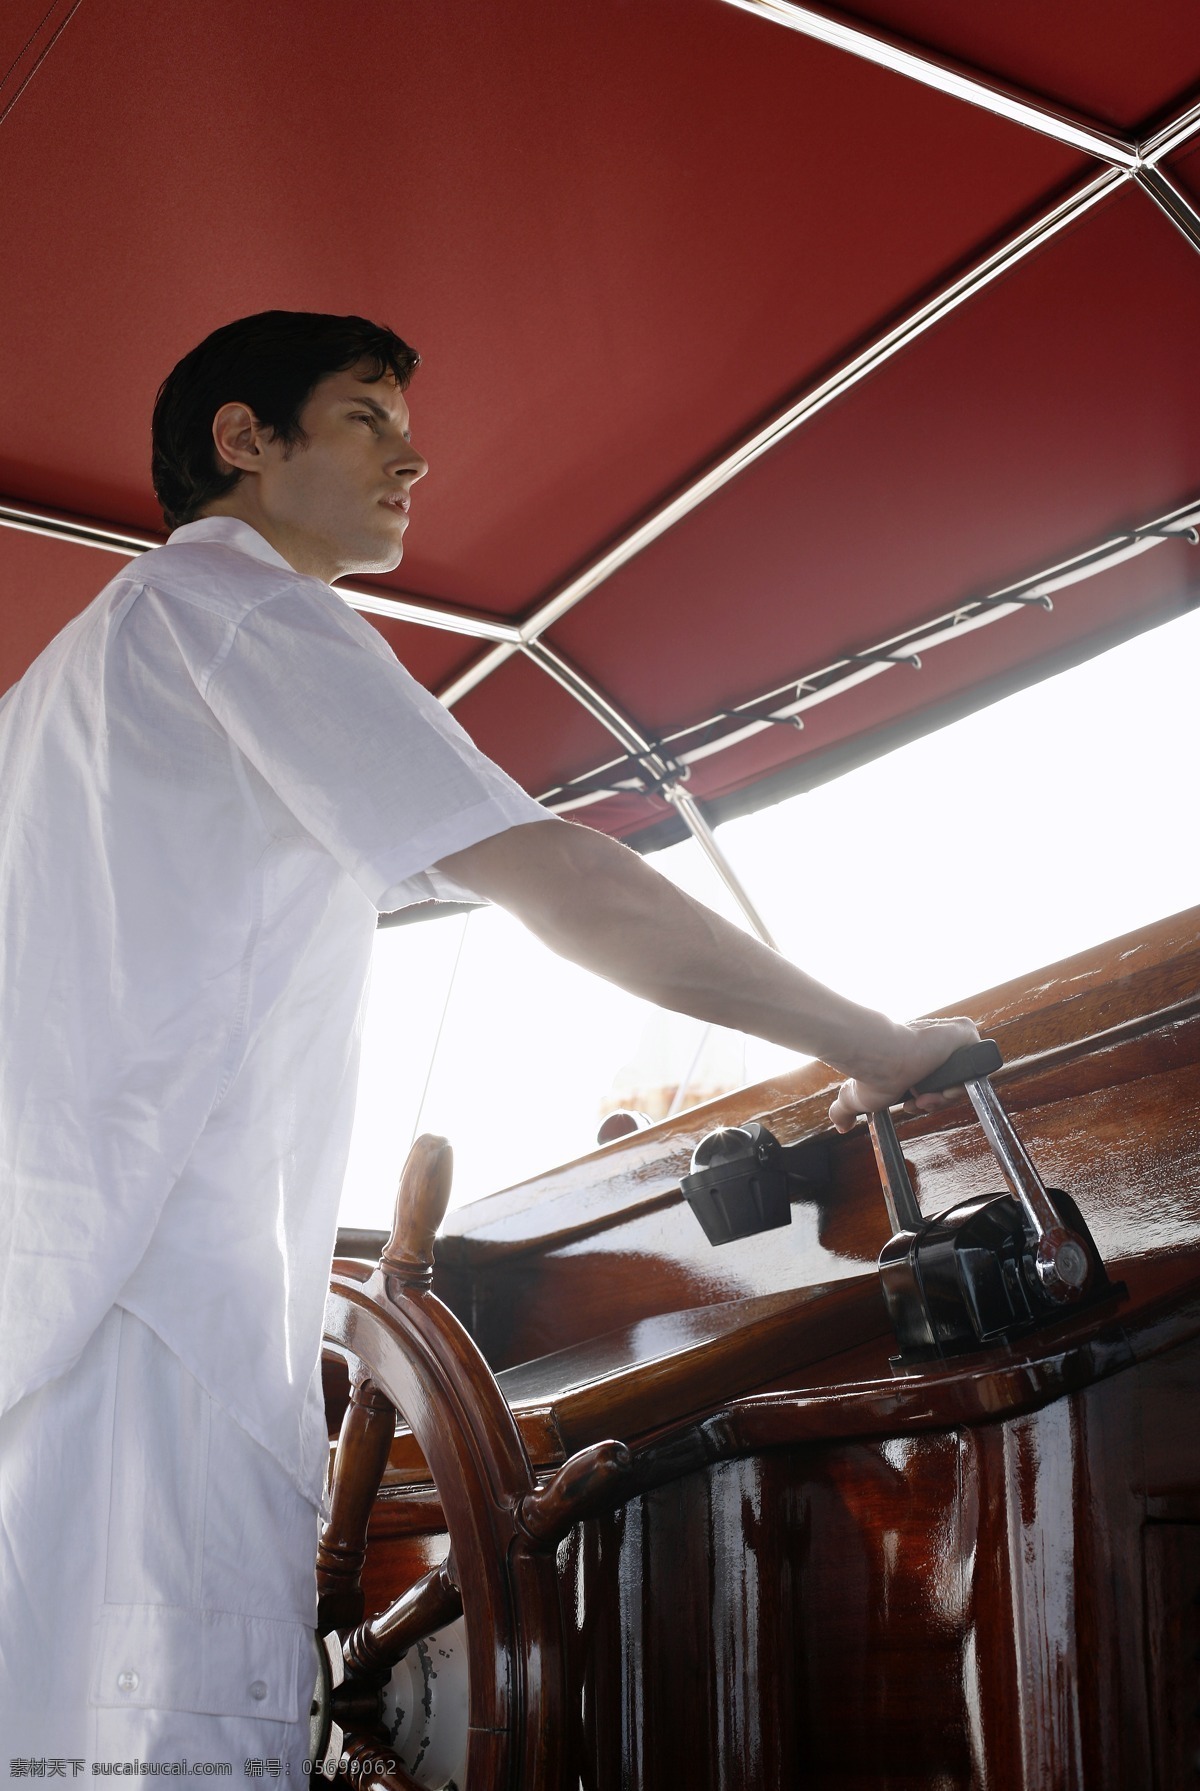 开船 男人 时尚男人 魅力男士 外国男性 掌舵 船长 生活人物 人物图片